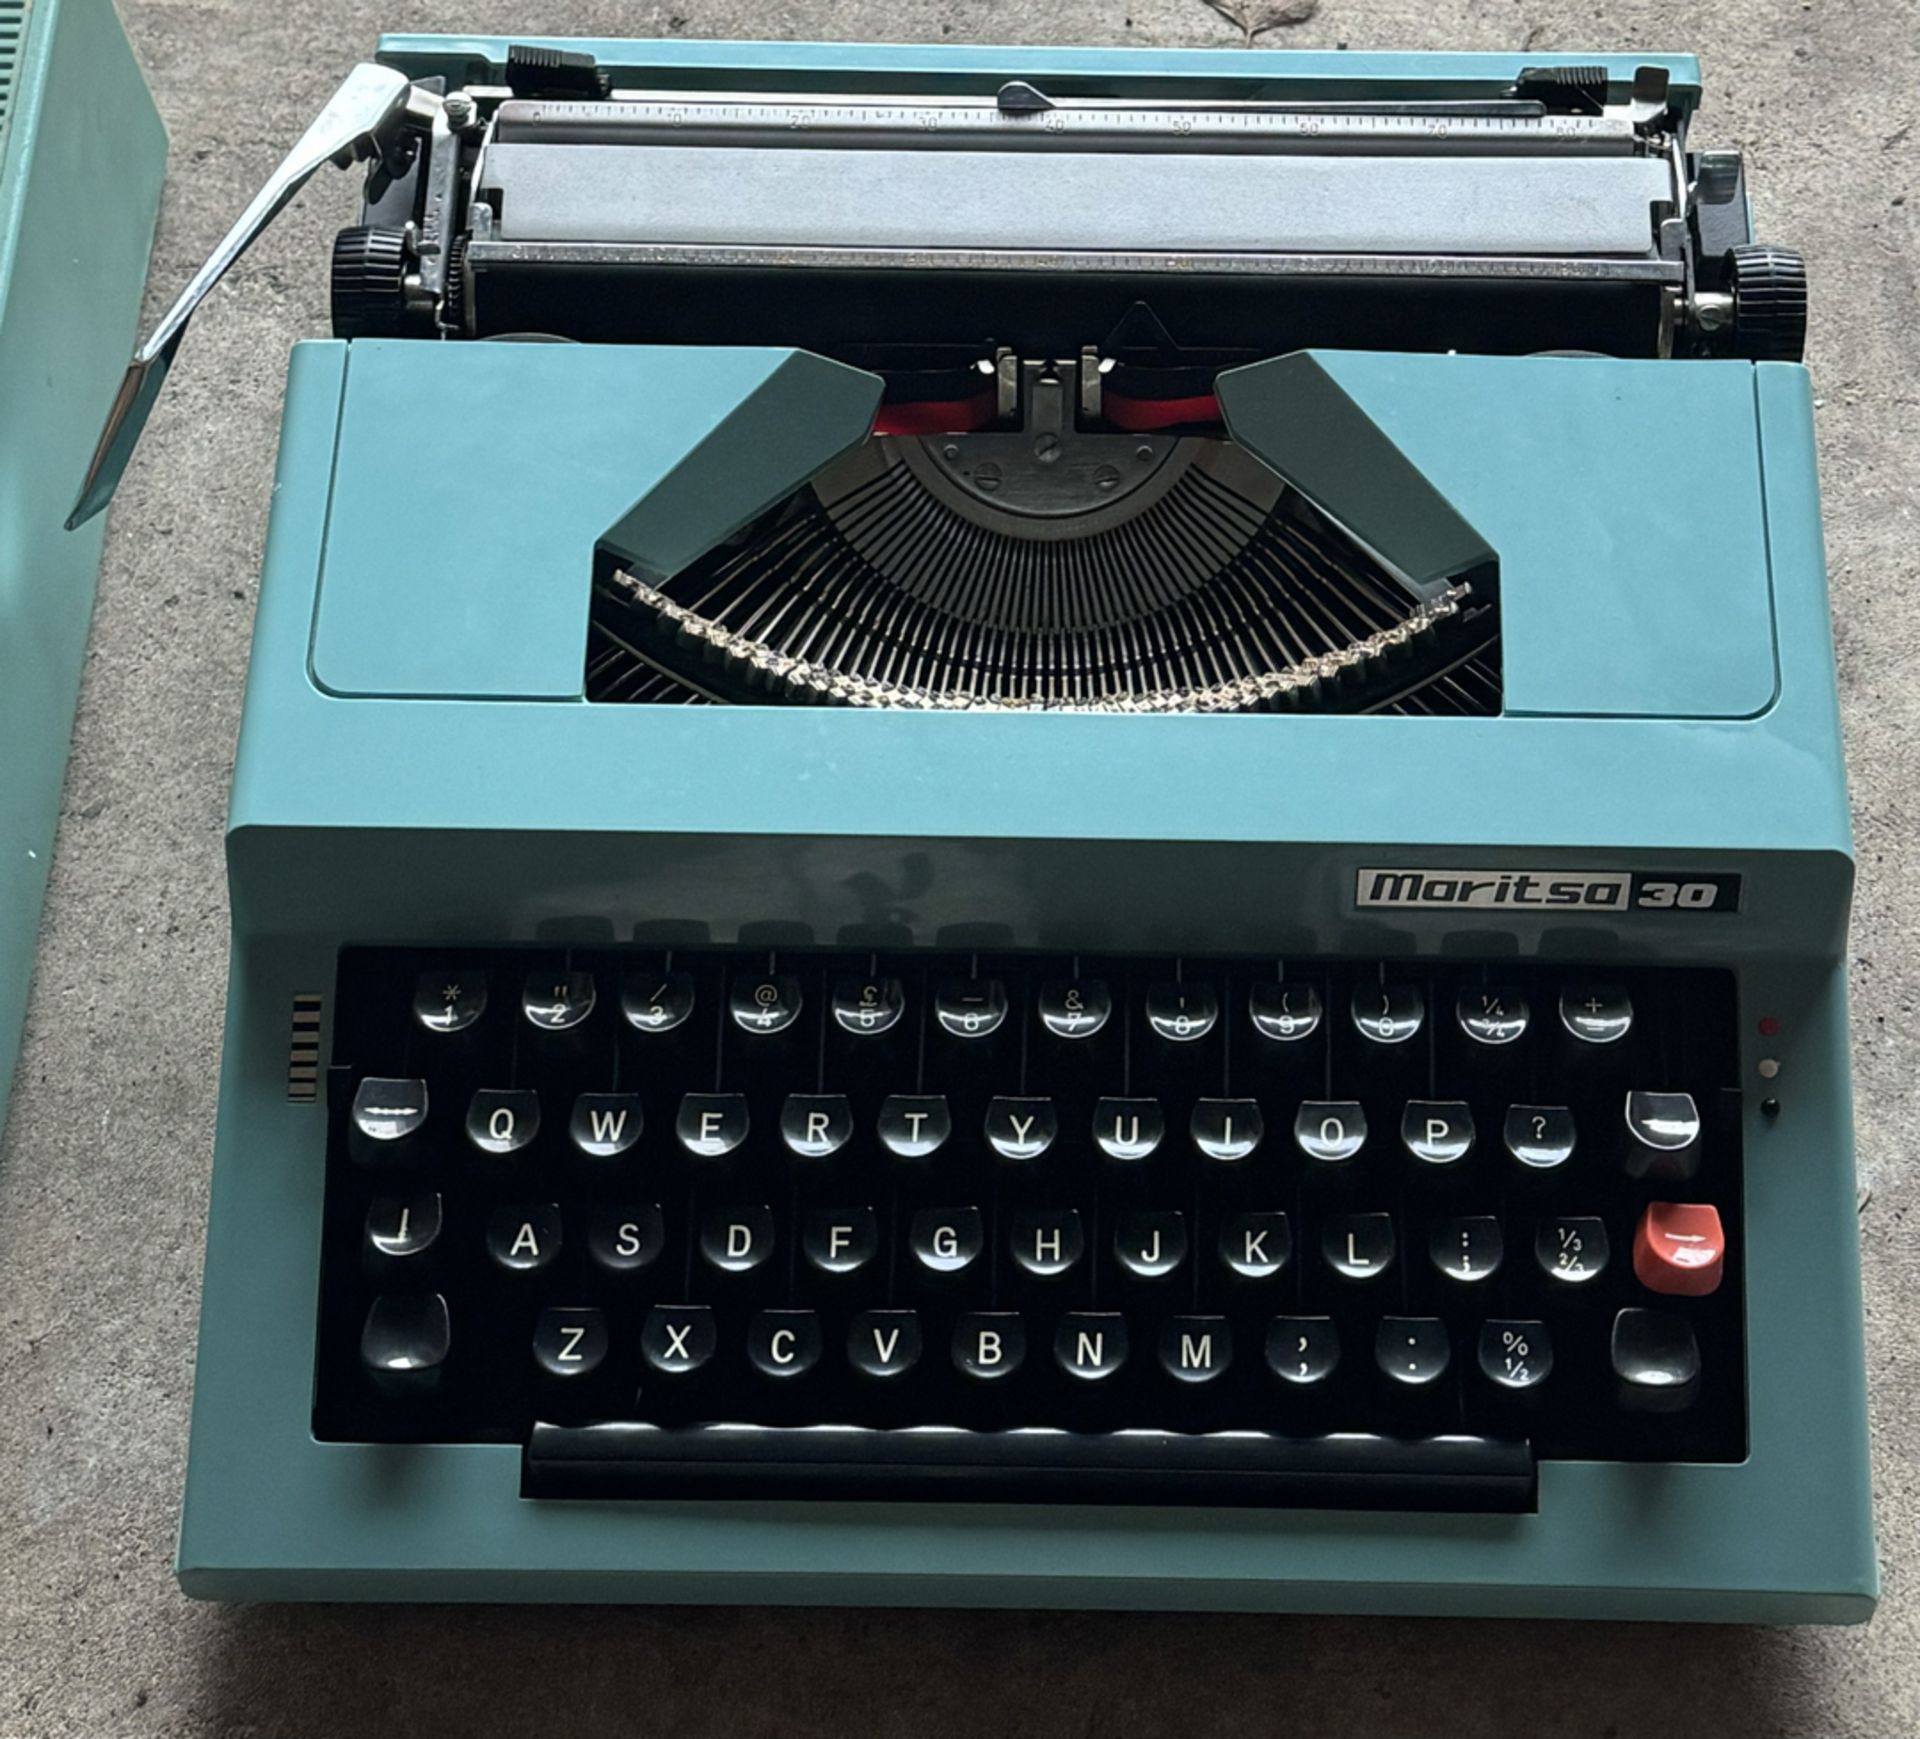 Vintage Blue Maritsa 30 Portable Typewriter in Case - Workshop Find, Untested - NO VAT ! - Image 2 of 3